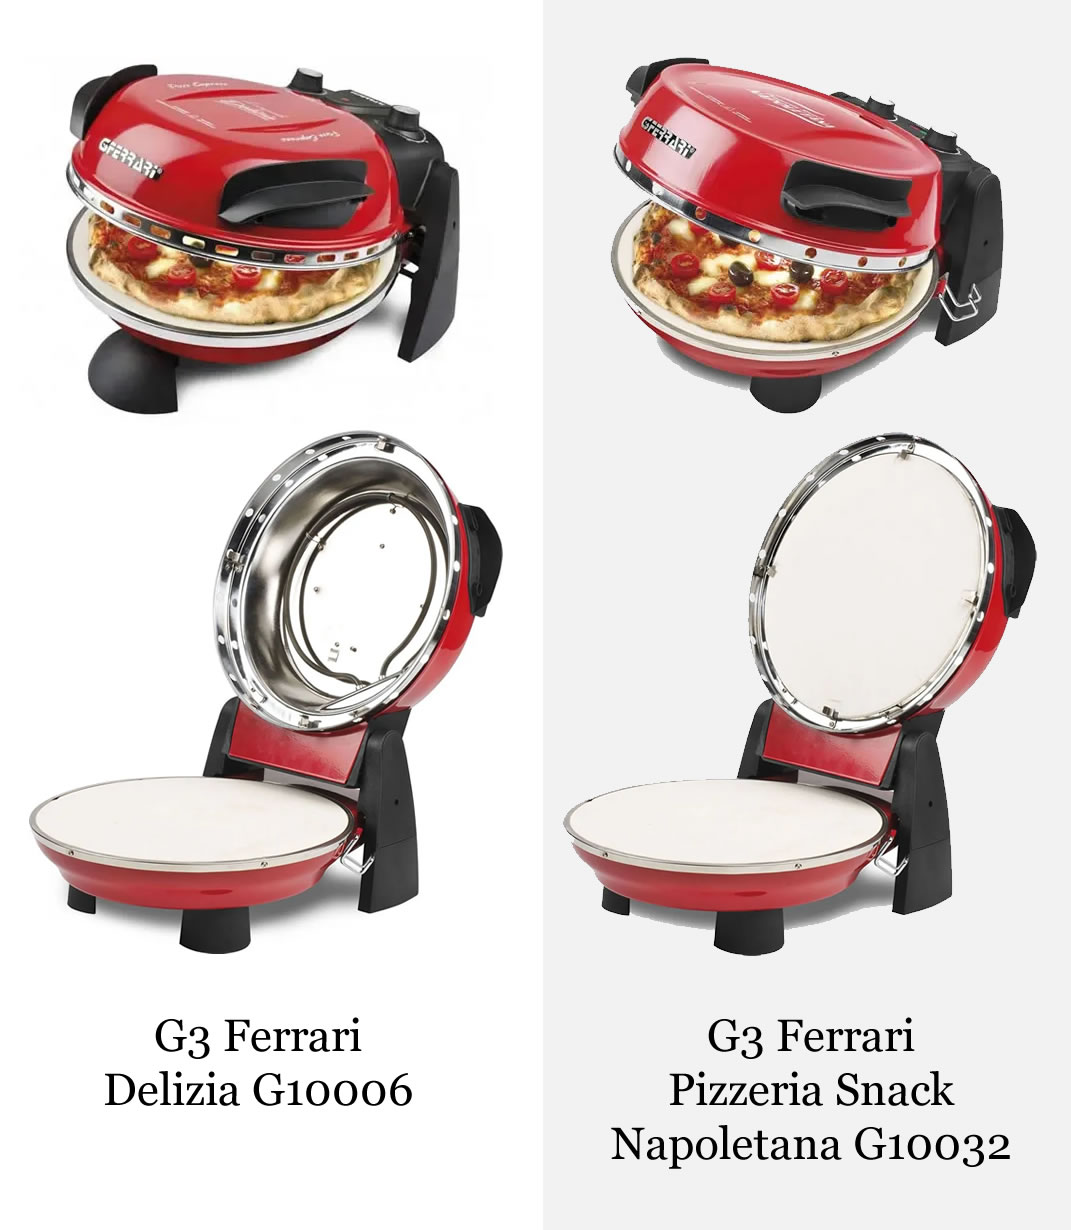 Het verschil tussen de G3 Ferrari Delizia en de Pizzeria Snack Napoletana